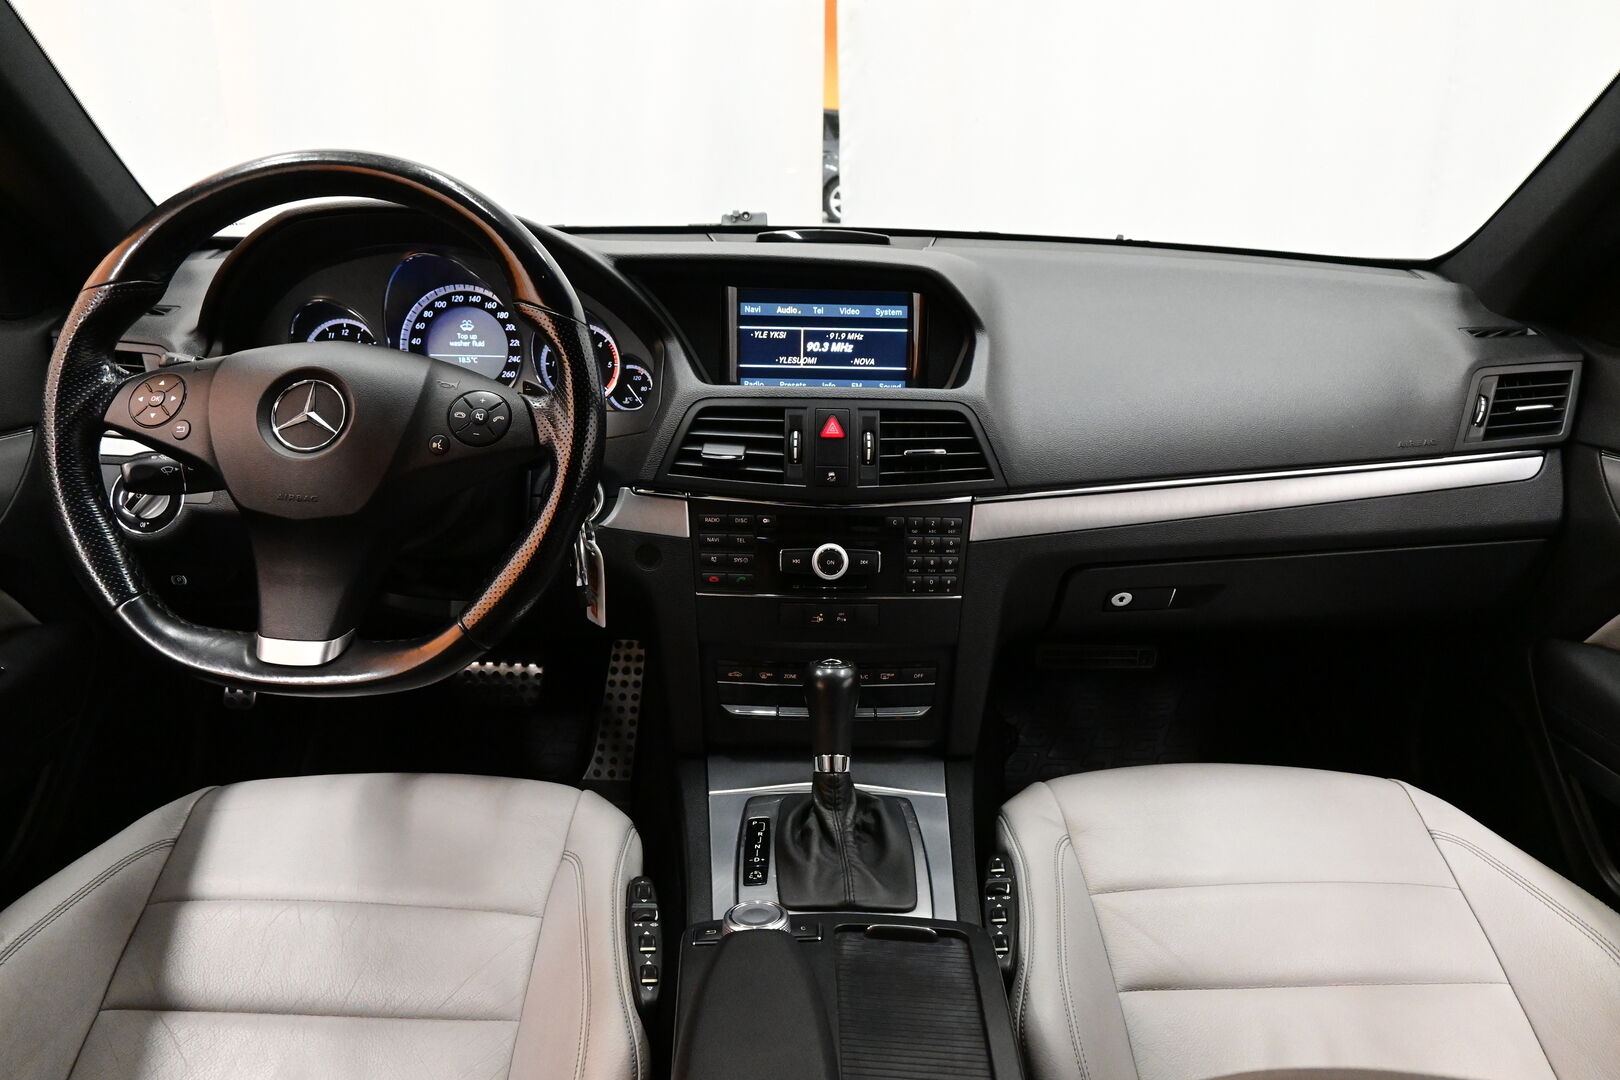 musta Coupe, Mercedes-Benz E – OUV-186